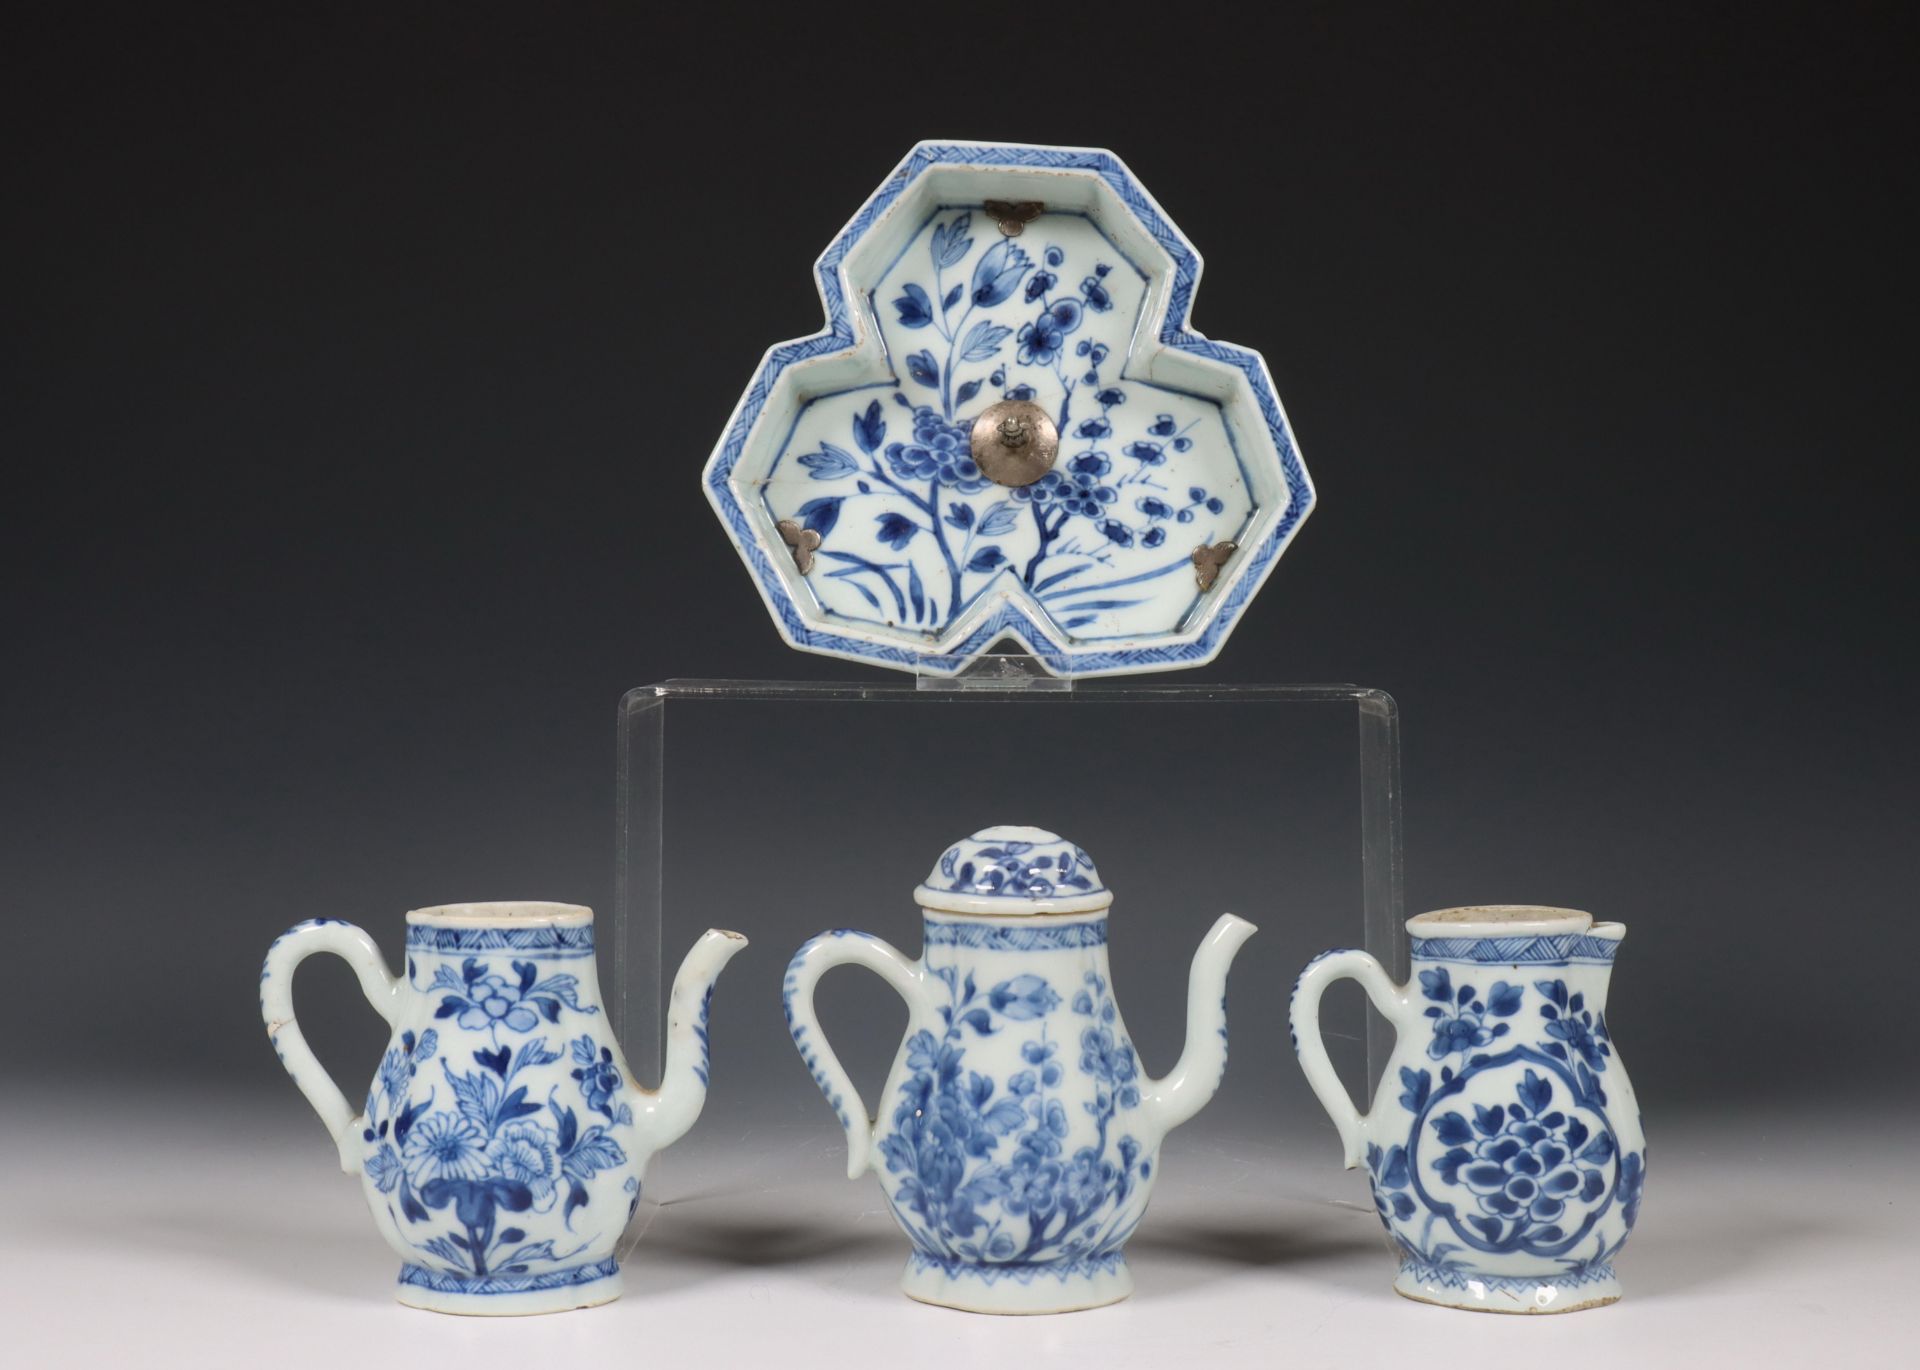 China, samengesteld blauw-wit porseleinen olie- en azijnstel, 18e eeuw, - Bild 4 aus 6